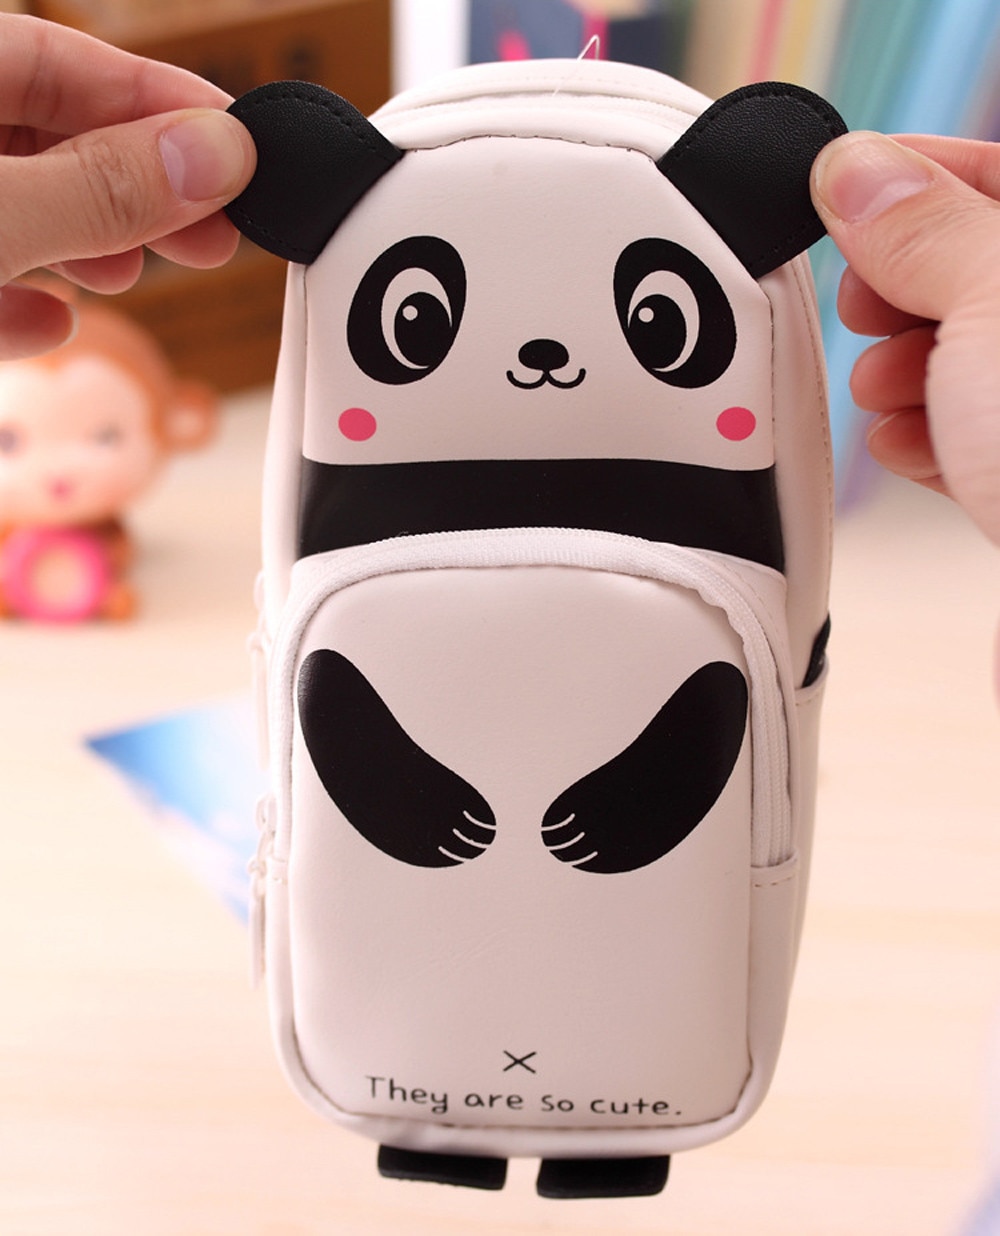 Dier Etui Leuke Kawaii 3d Panda Etui Schoolbenodigdheden Nieuwtje Voor Kids Voor Kinderen Panda # y30